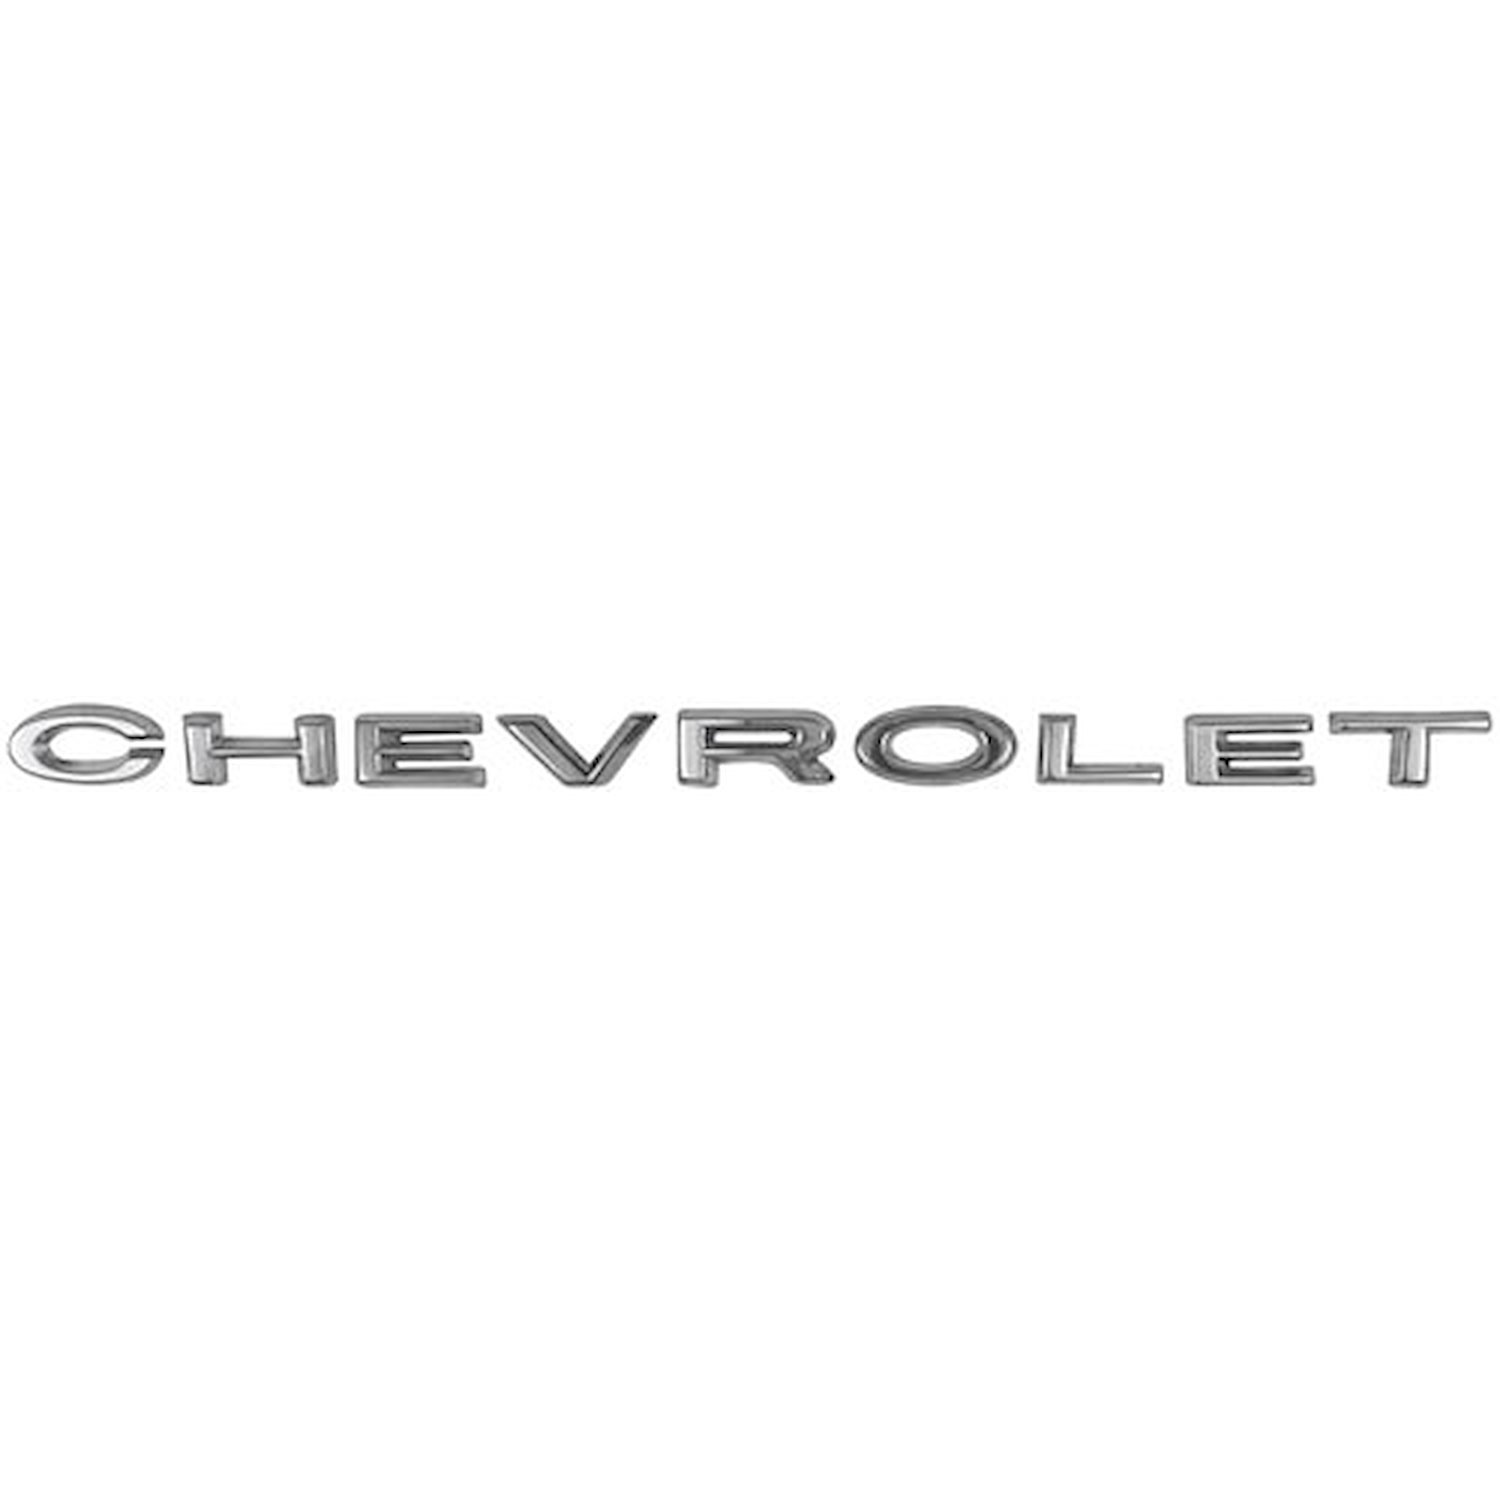 Hood Emblem Letters 1964 Chevy Chevelle & El